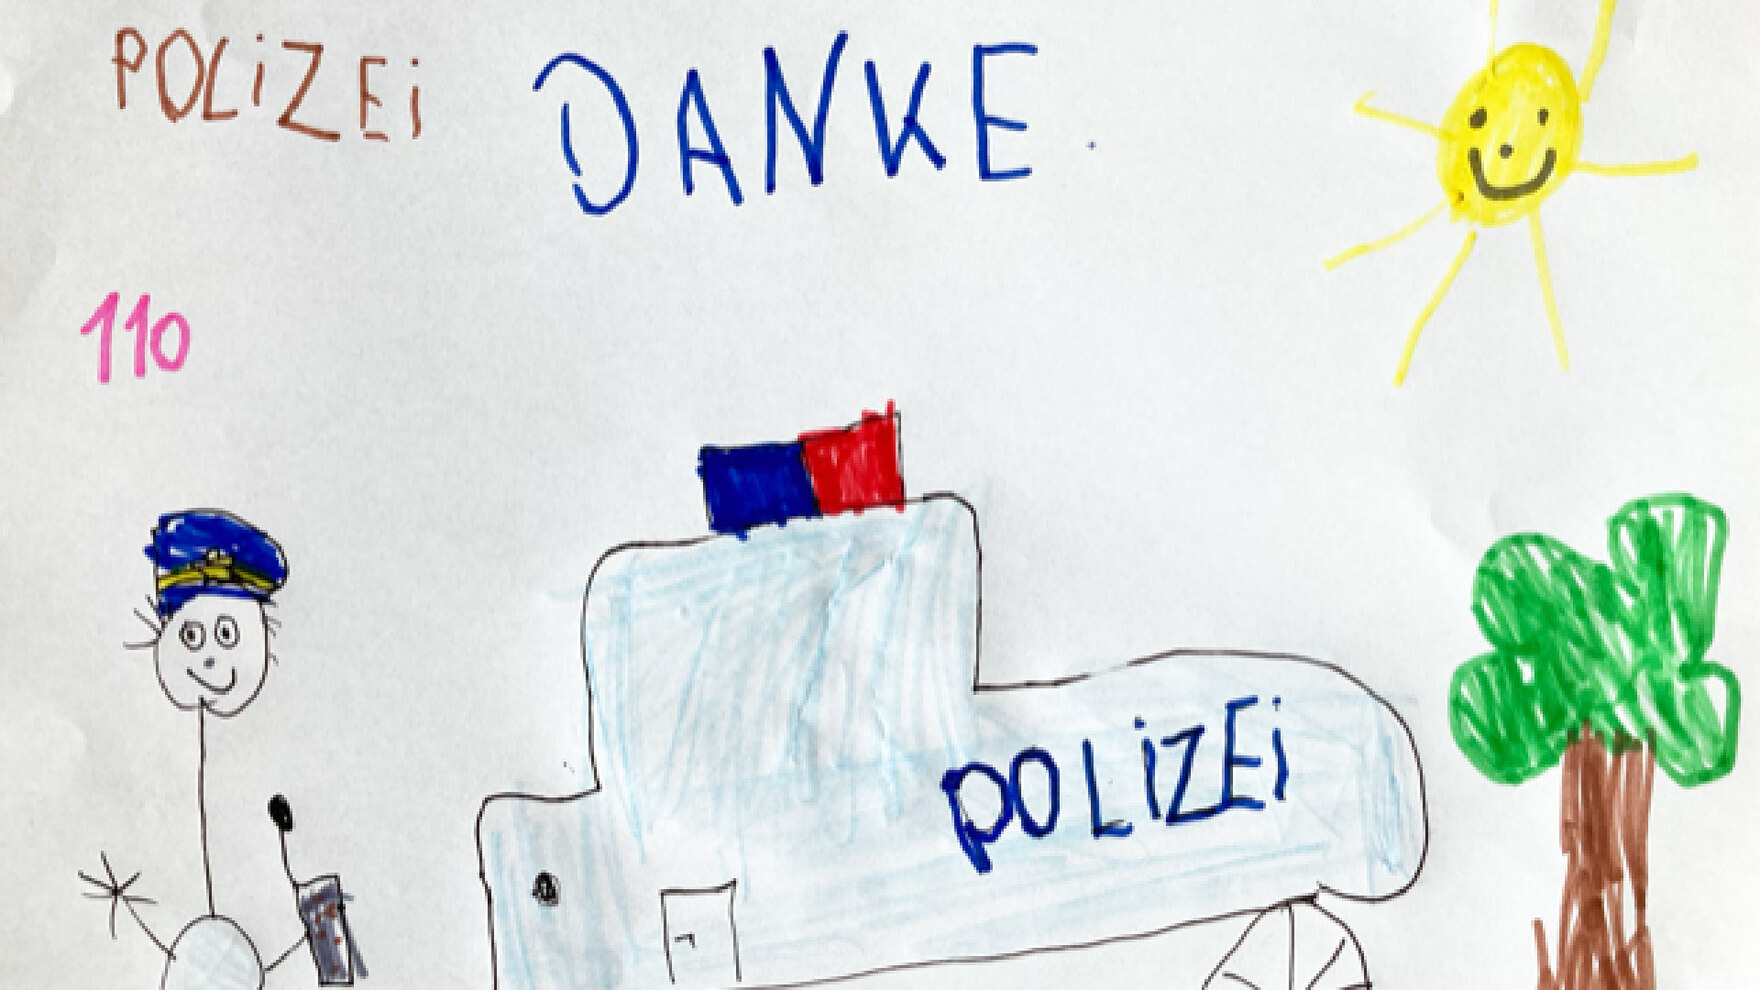 Eine Kinderzeichnung zeigt in der Mitte ein Polizeiauto mit Blaulicht, daneben ein lächelndes Strichmännchen mit Polizeimütze. Eine lachende Sonne scheint, geschrieben steht in unterschiedlichen Farben: »POLIZEI«, »110«, »DANKE«.